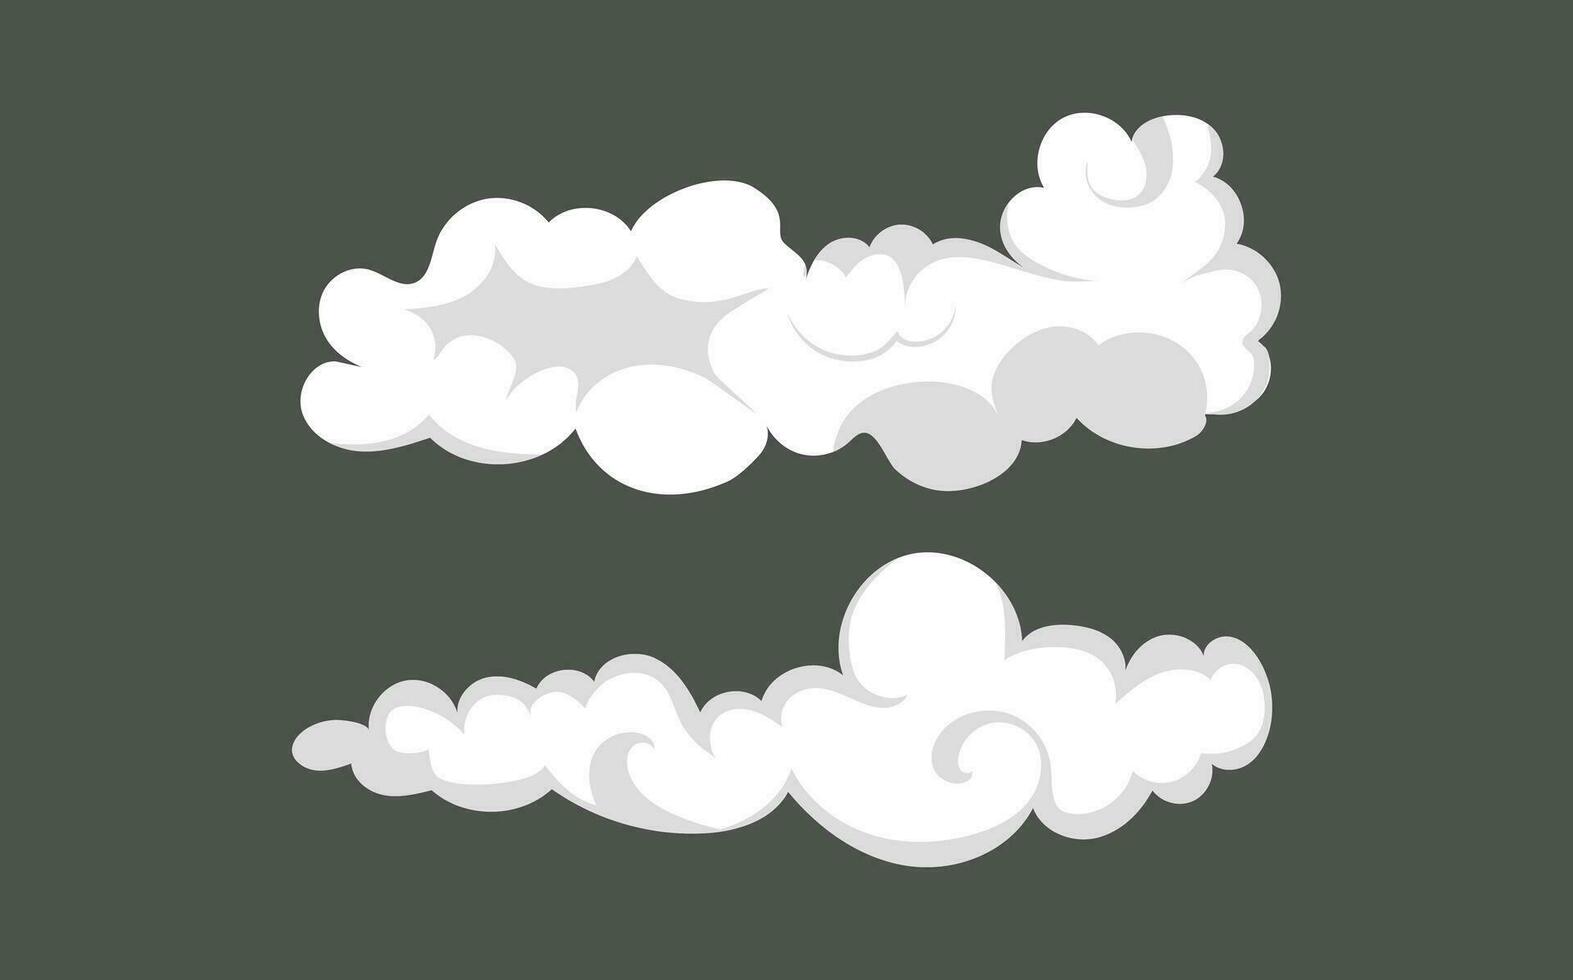 fumar explosión animación de un explosión con cómic volador nubes conjunto de aislado vector ilustraciones a crear un explosión efecto. el efecto de fumar movimienot, brillar y dinámica auge.